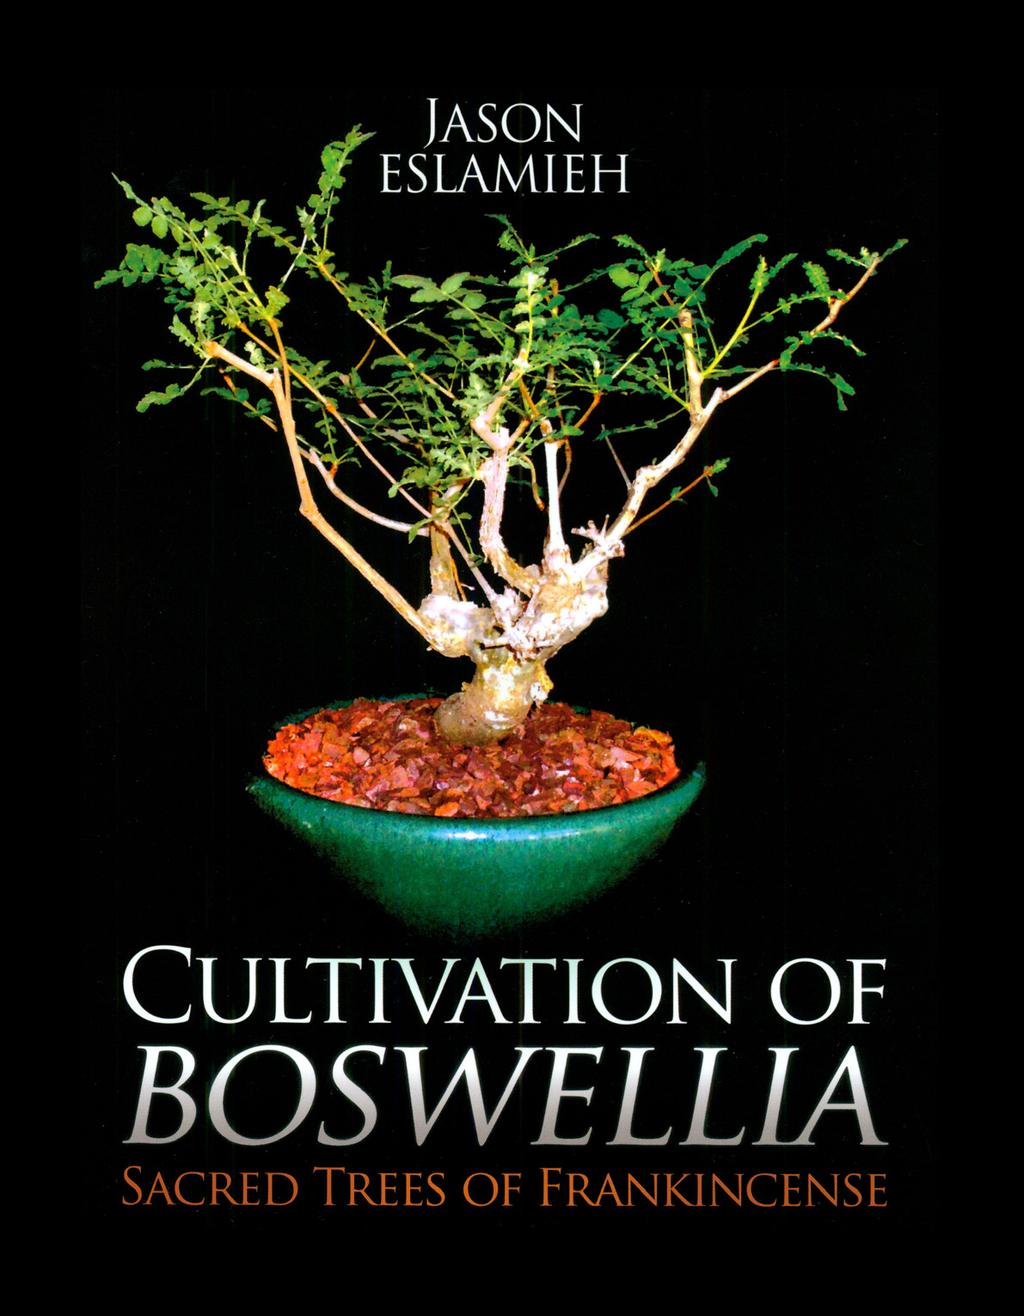 tropických druhů rodu Boswellia, jejich aranžování (vhodné jako